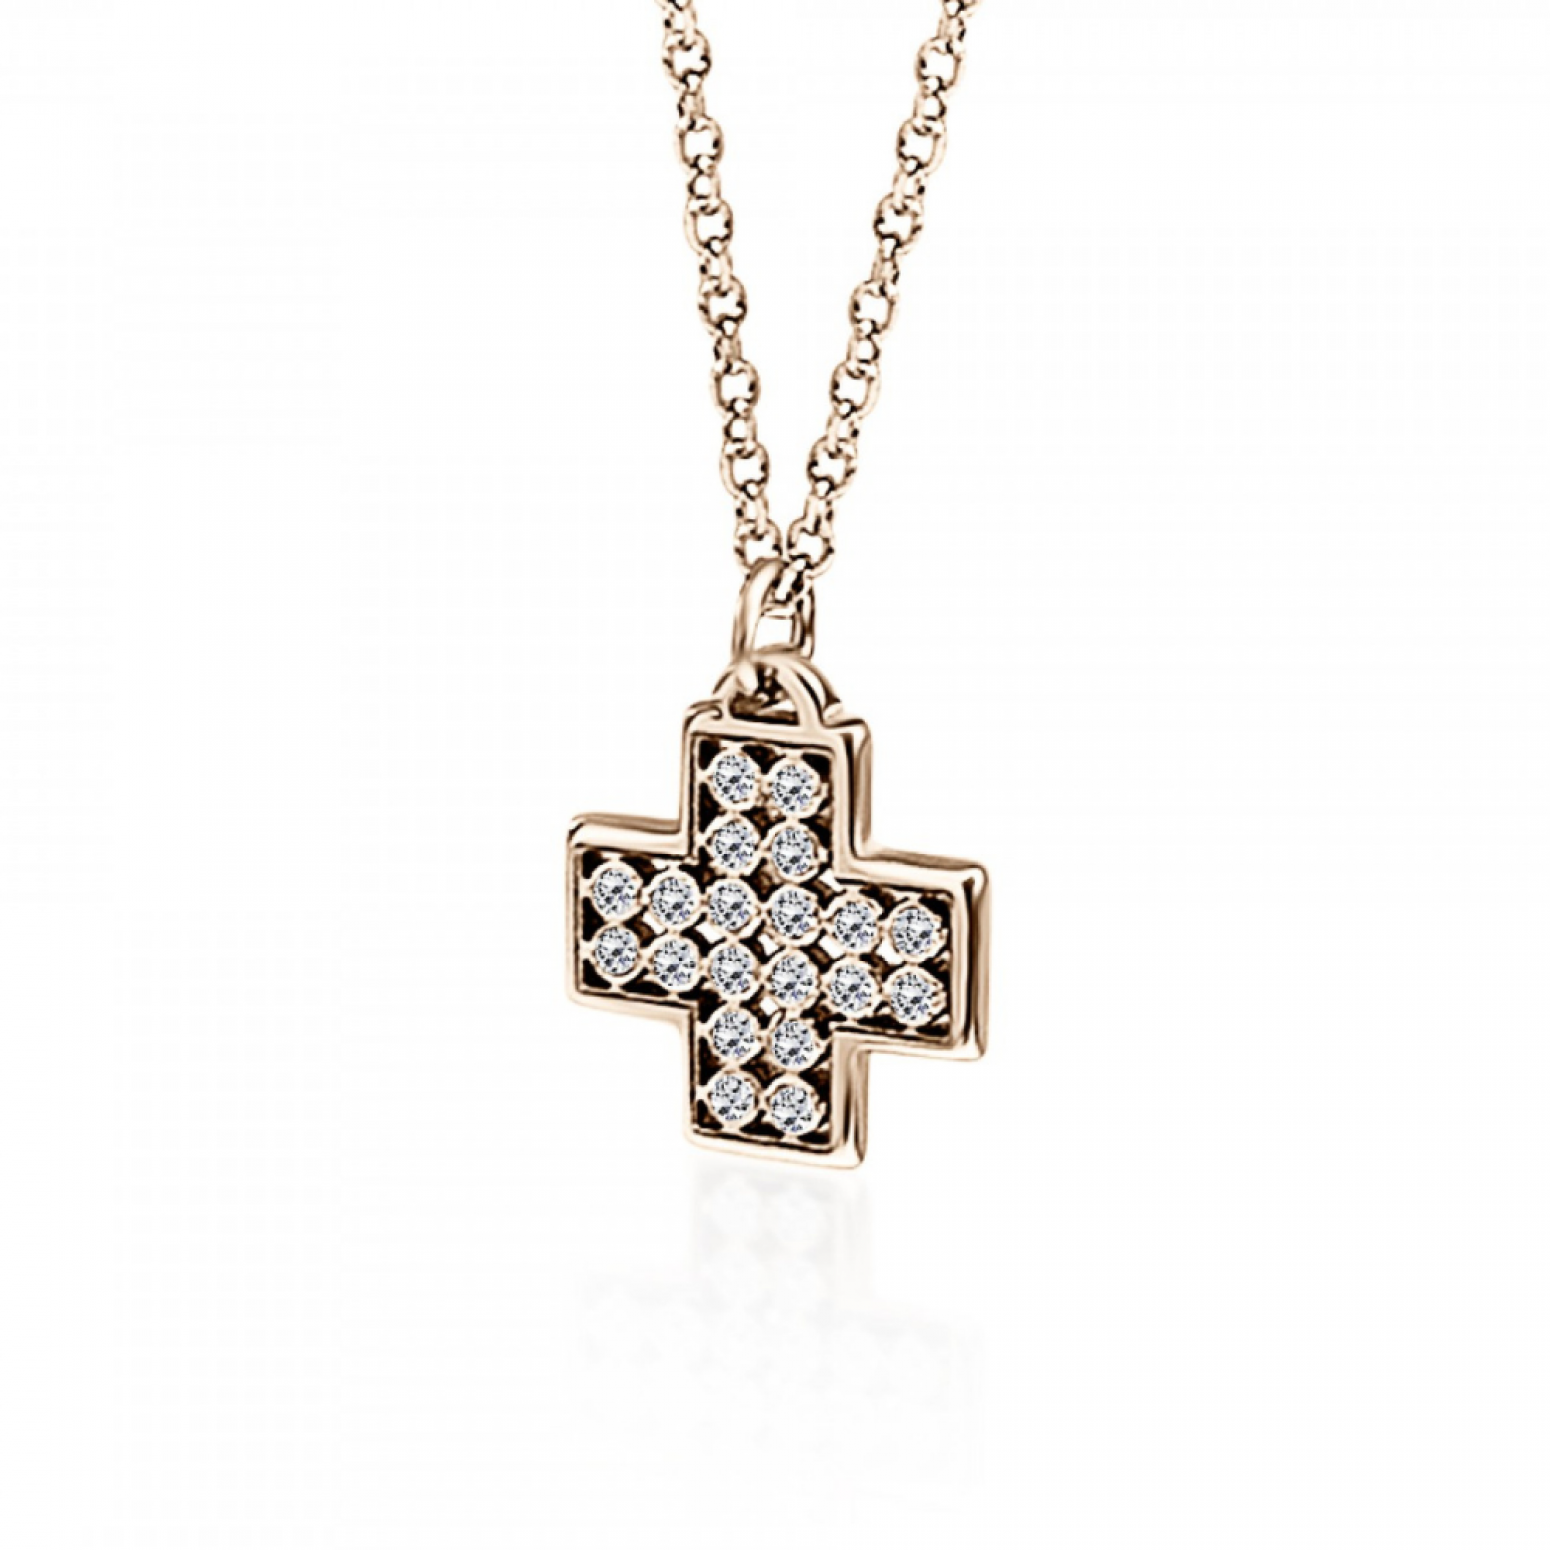 Cross neclace, Κ14 pink gold with diamonds 0.06ct, VS2, H ko5013 NECKLACES Κοσμηματα - chrilia.gr